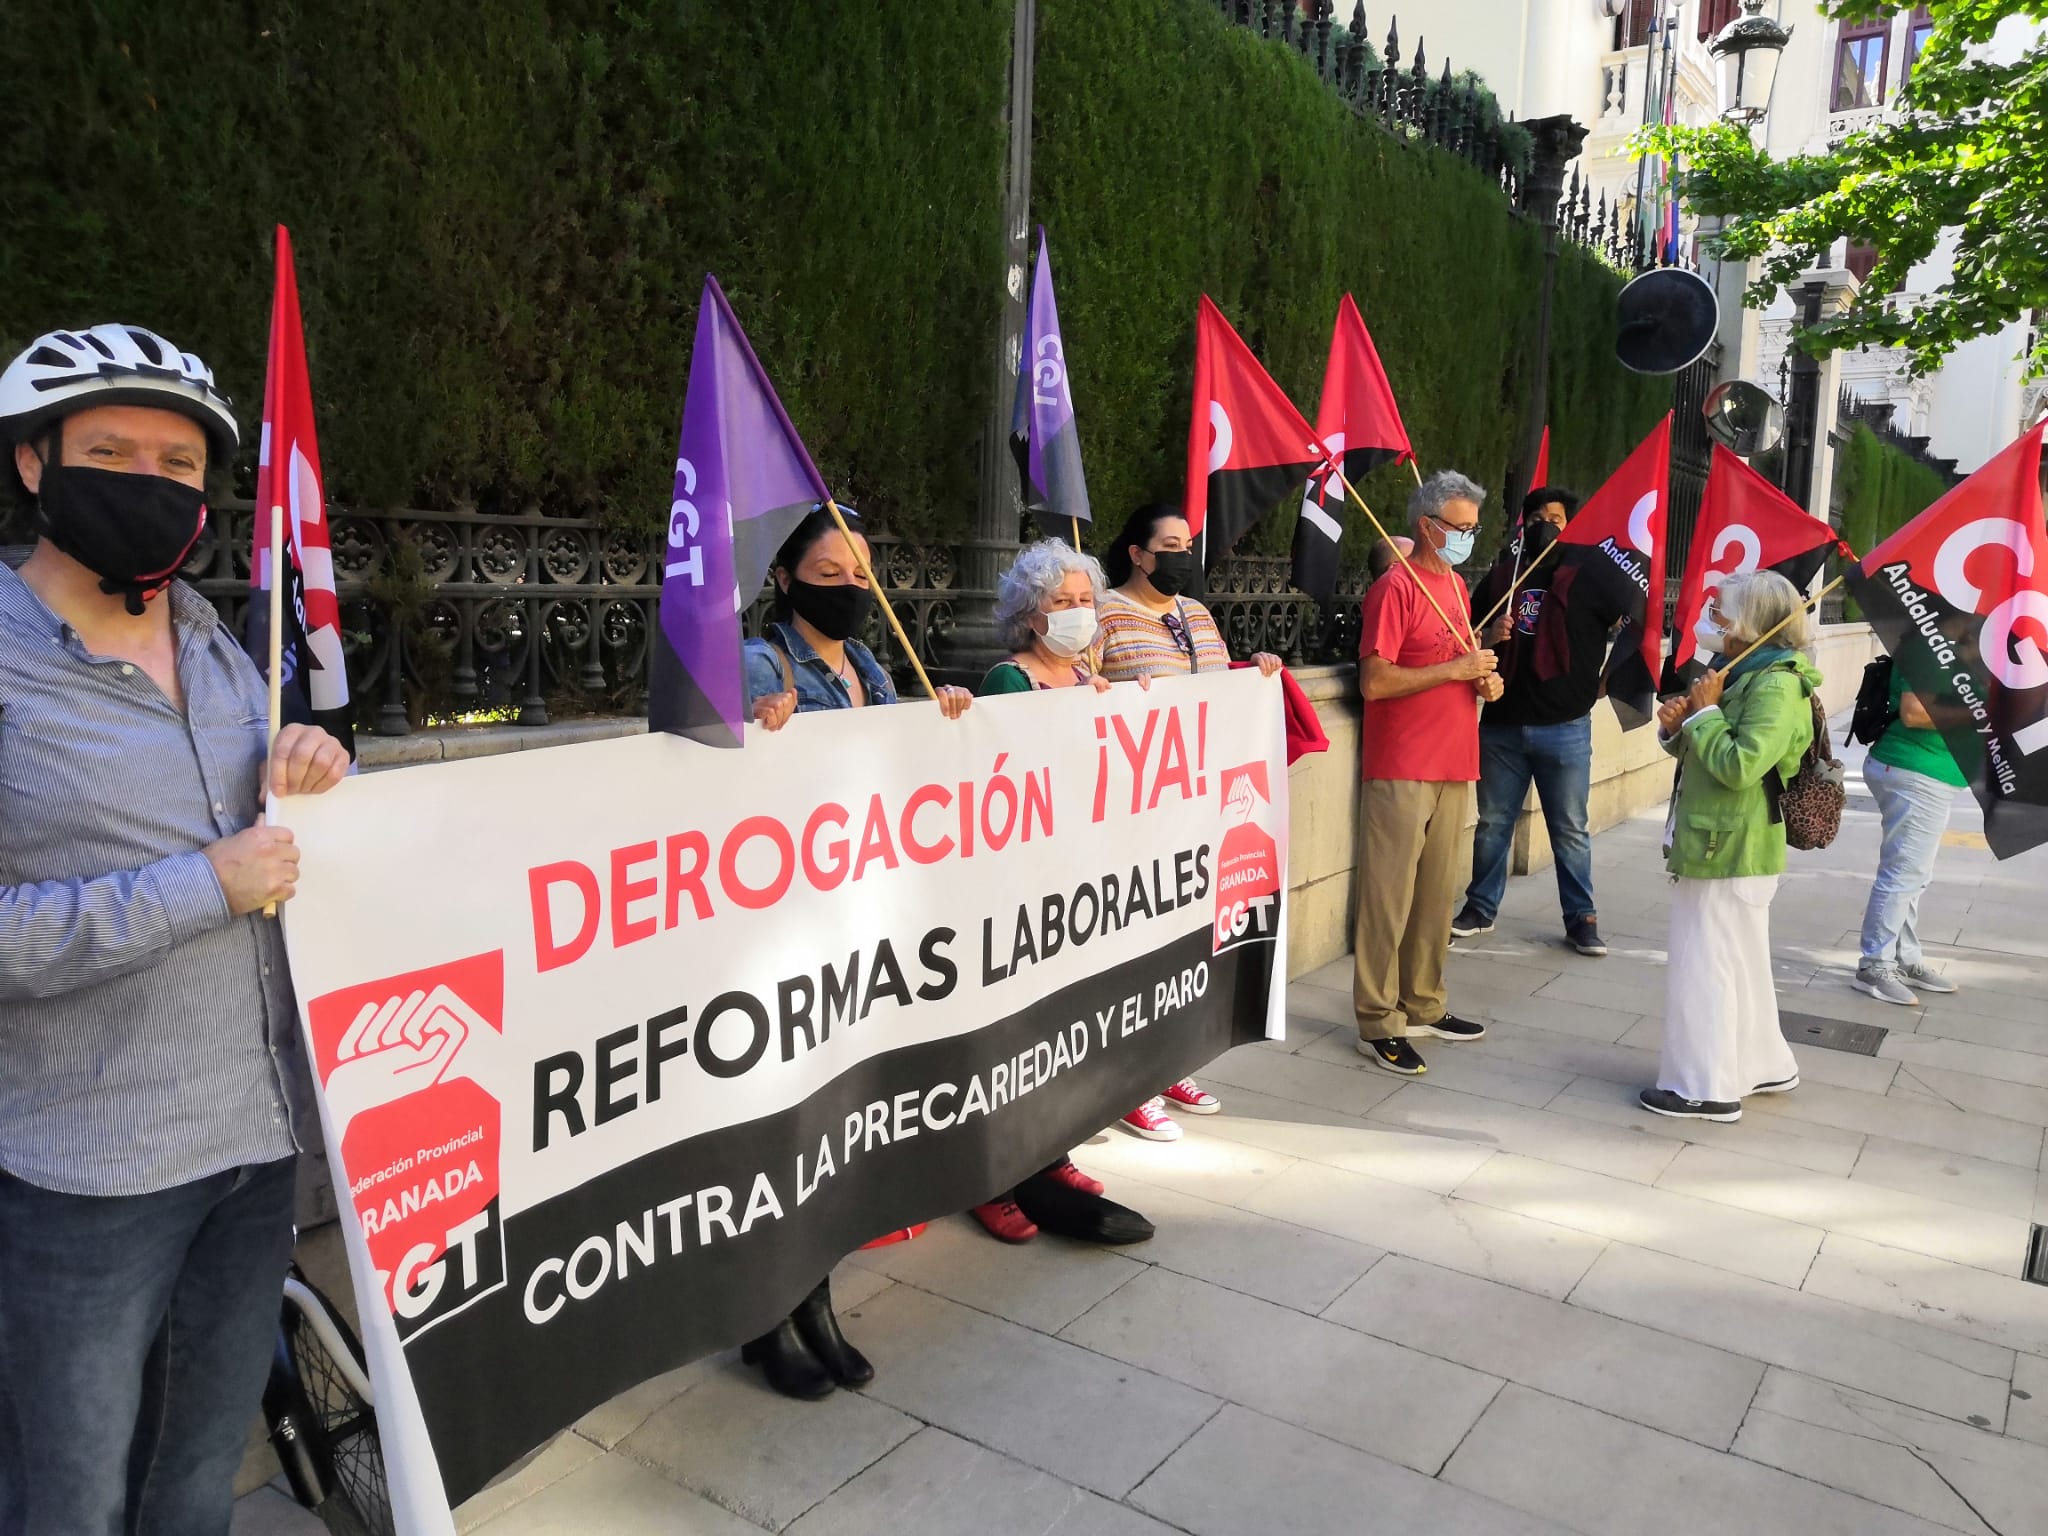 CGT exige al Gobierno de PSOE y Unidas Podemos la derogación de las Reformas laborales de Rajoy y Zapatero